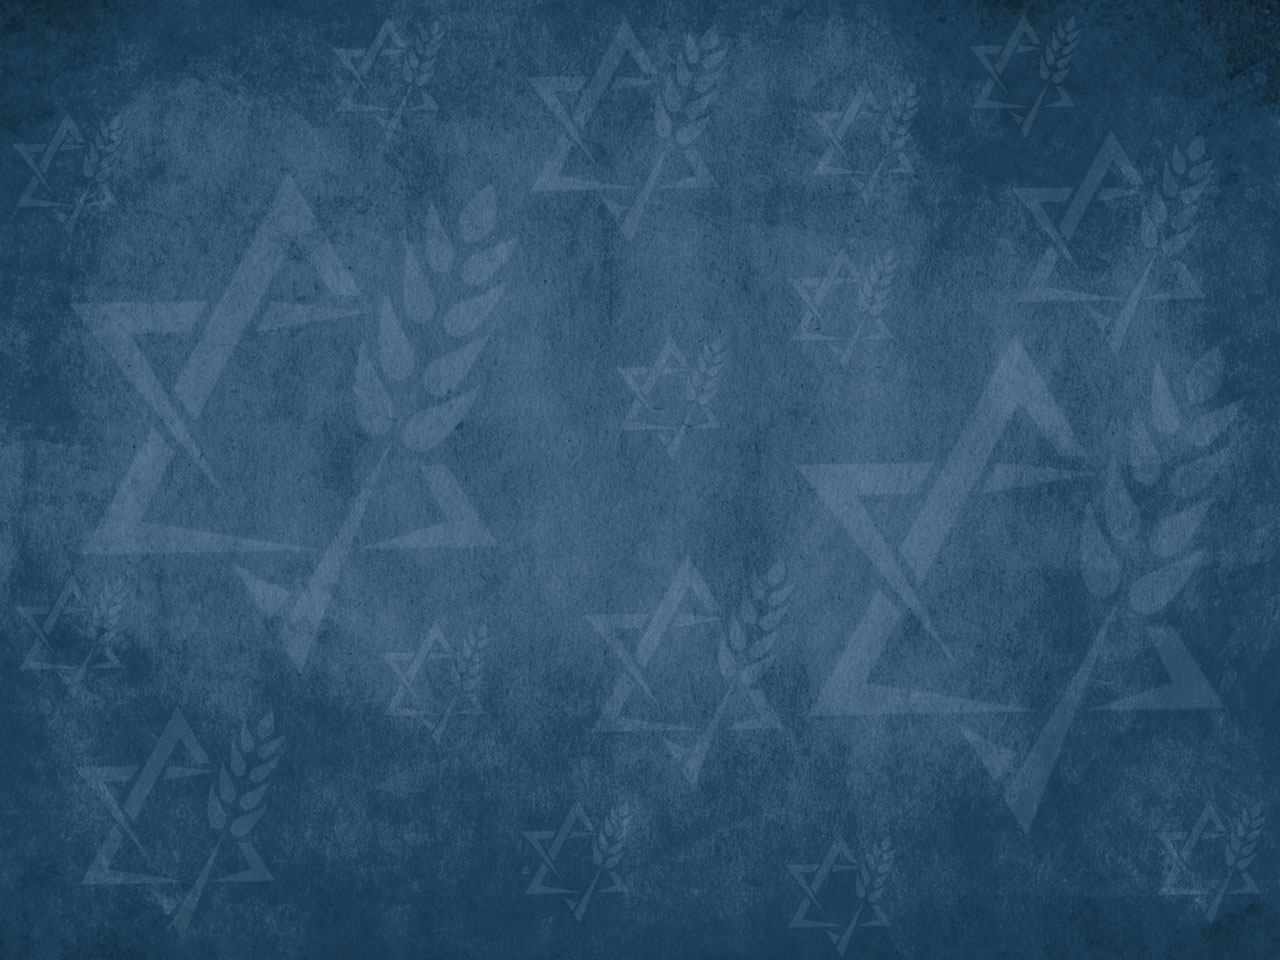 Hanukkah Wallpaper - WallpaperSafari